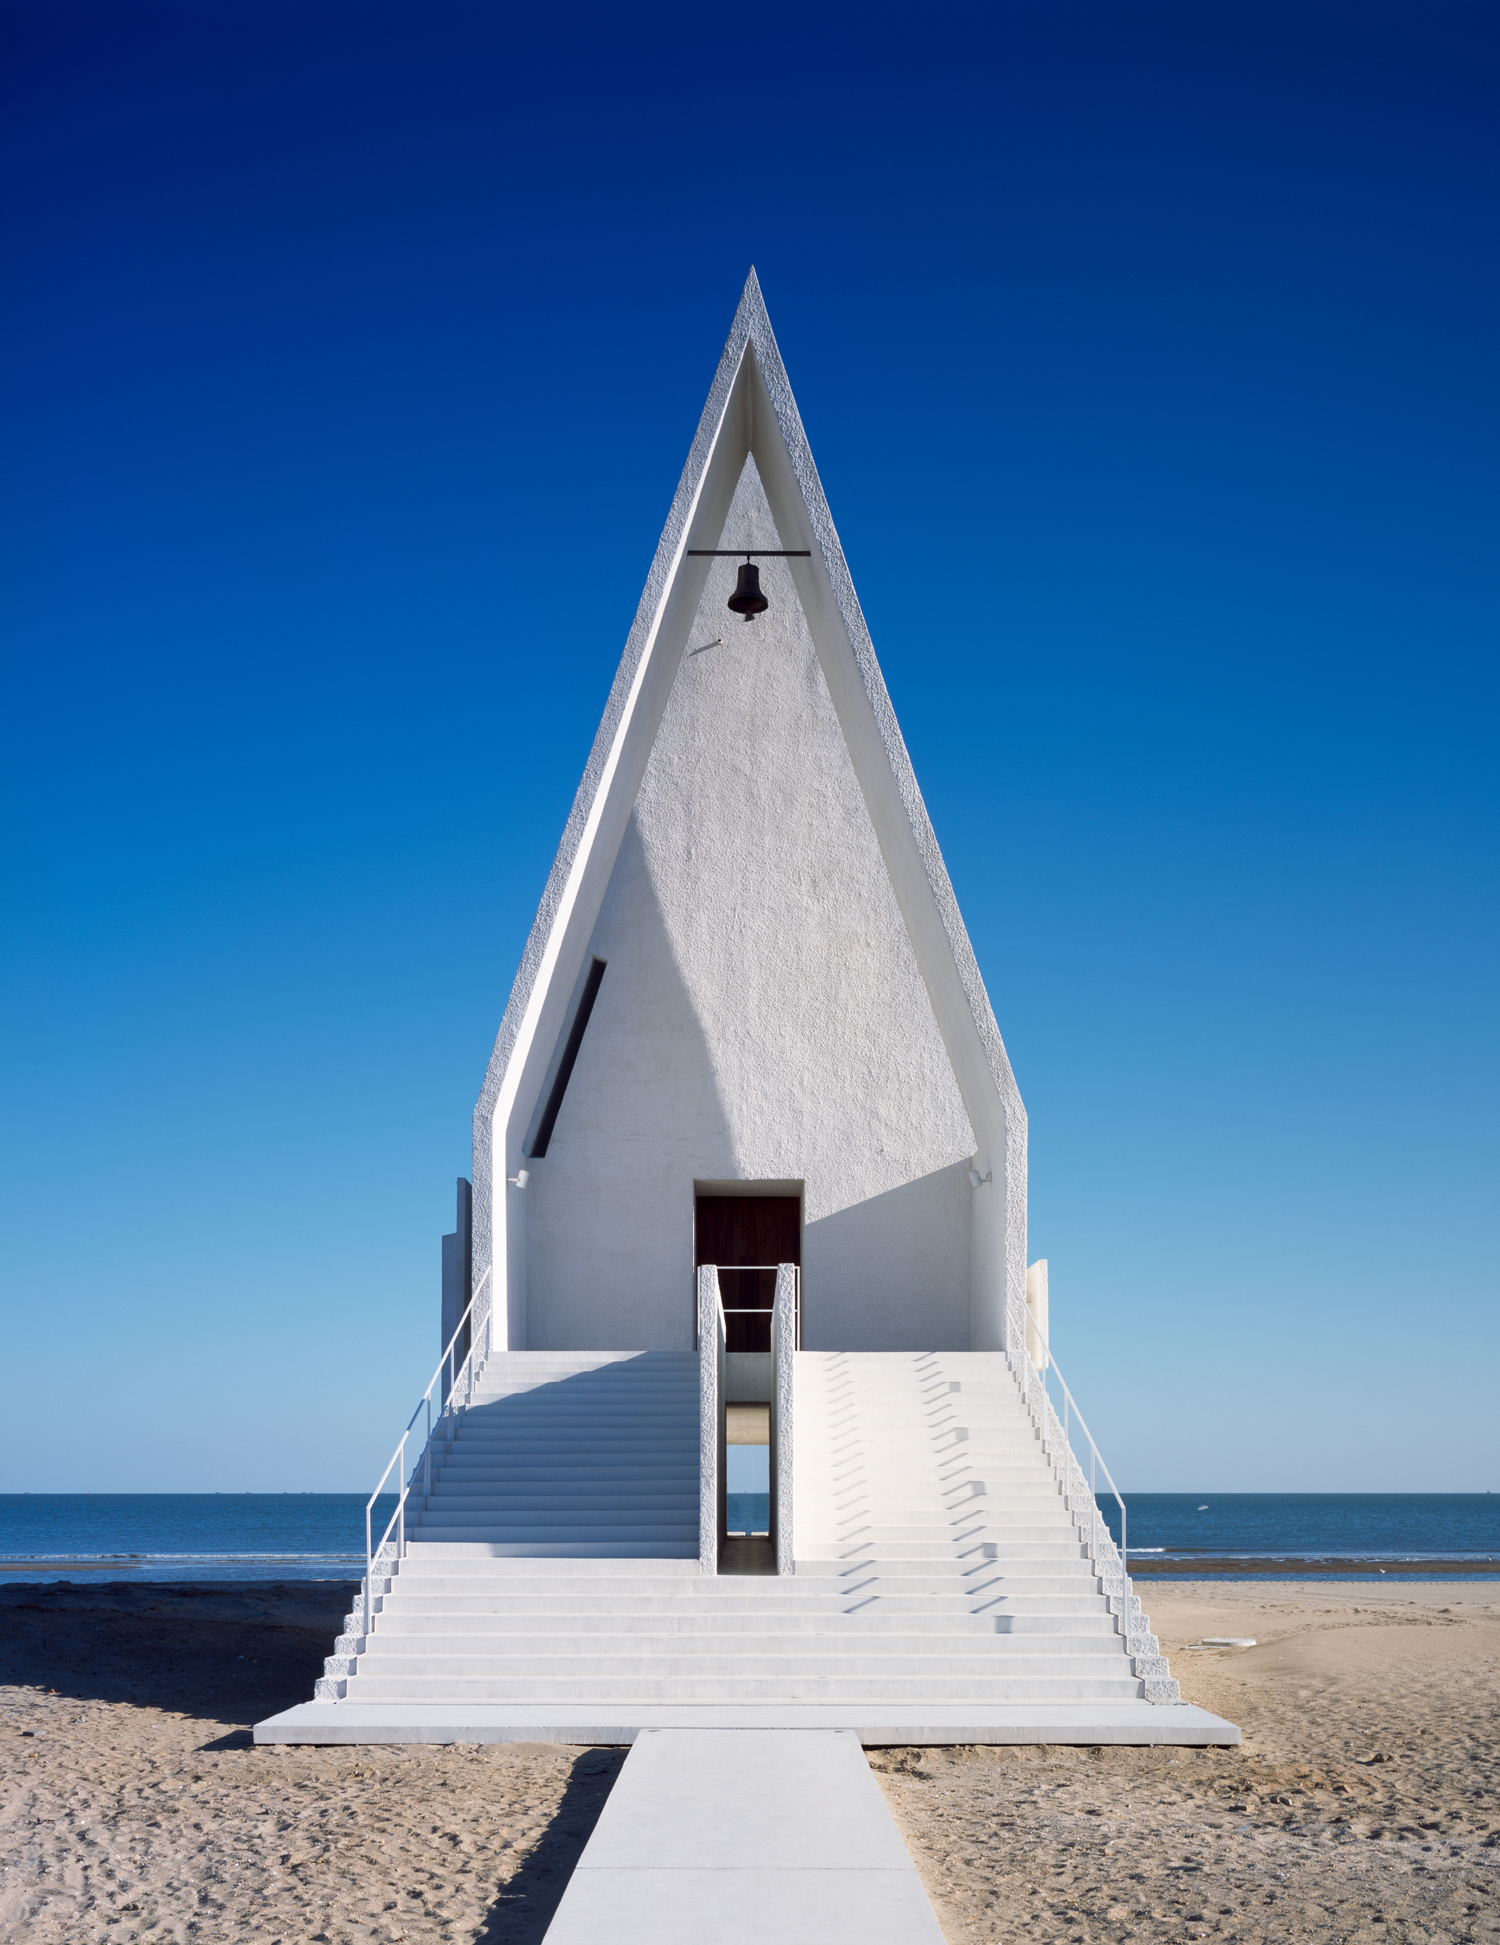 008-seashore-chapel-china-by-vector-architects.jpg